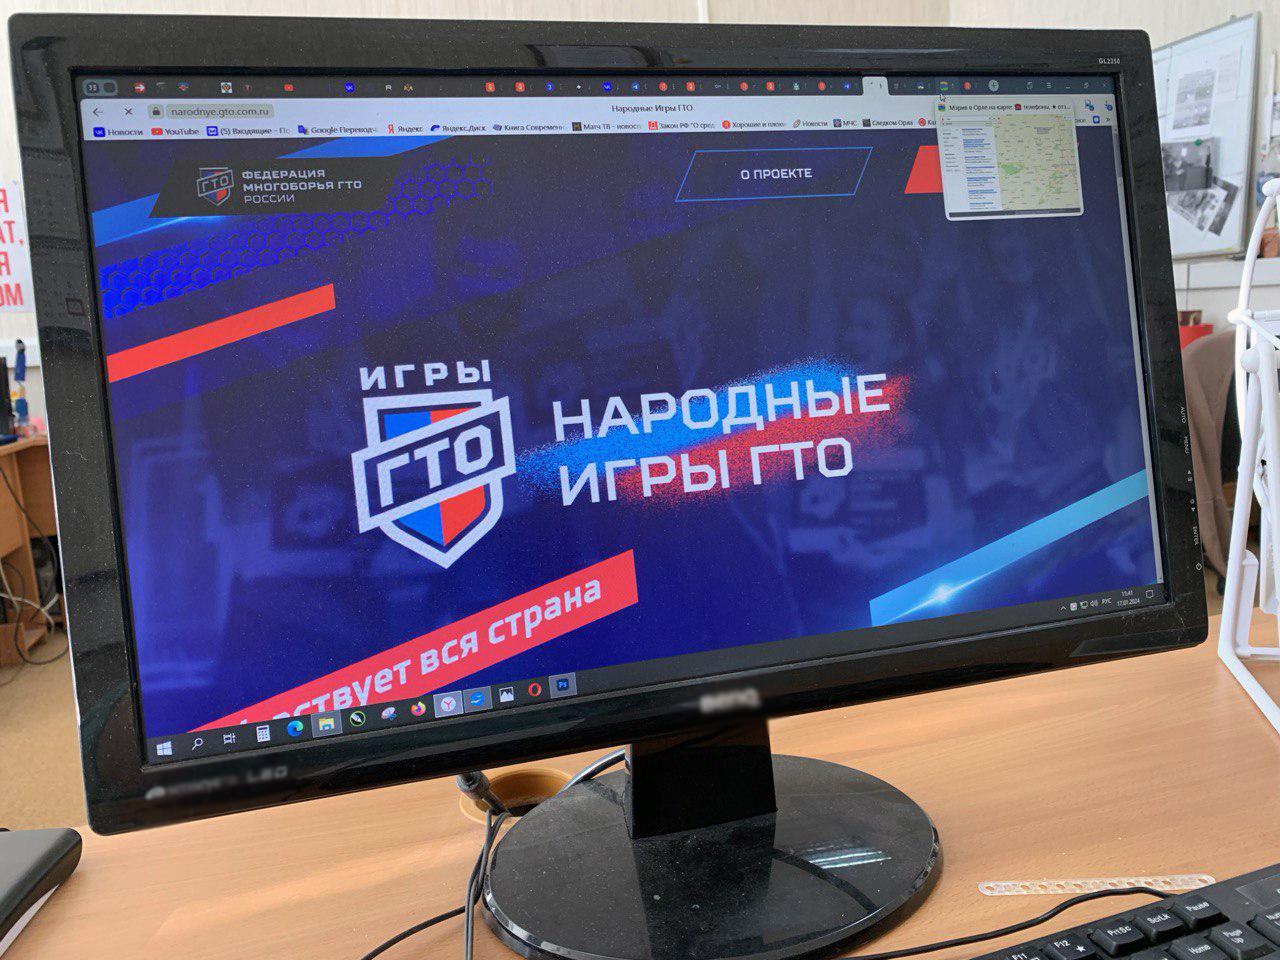 В соревнованиях «Народные игры ГТО» орловчане могут участвовать онлайн